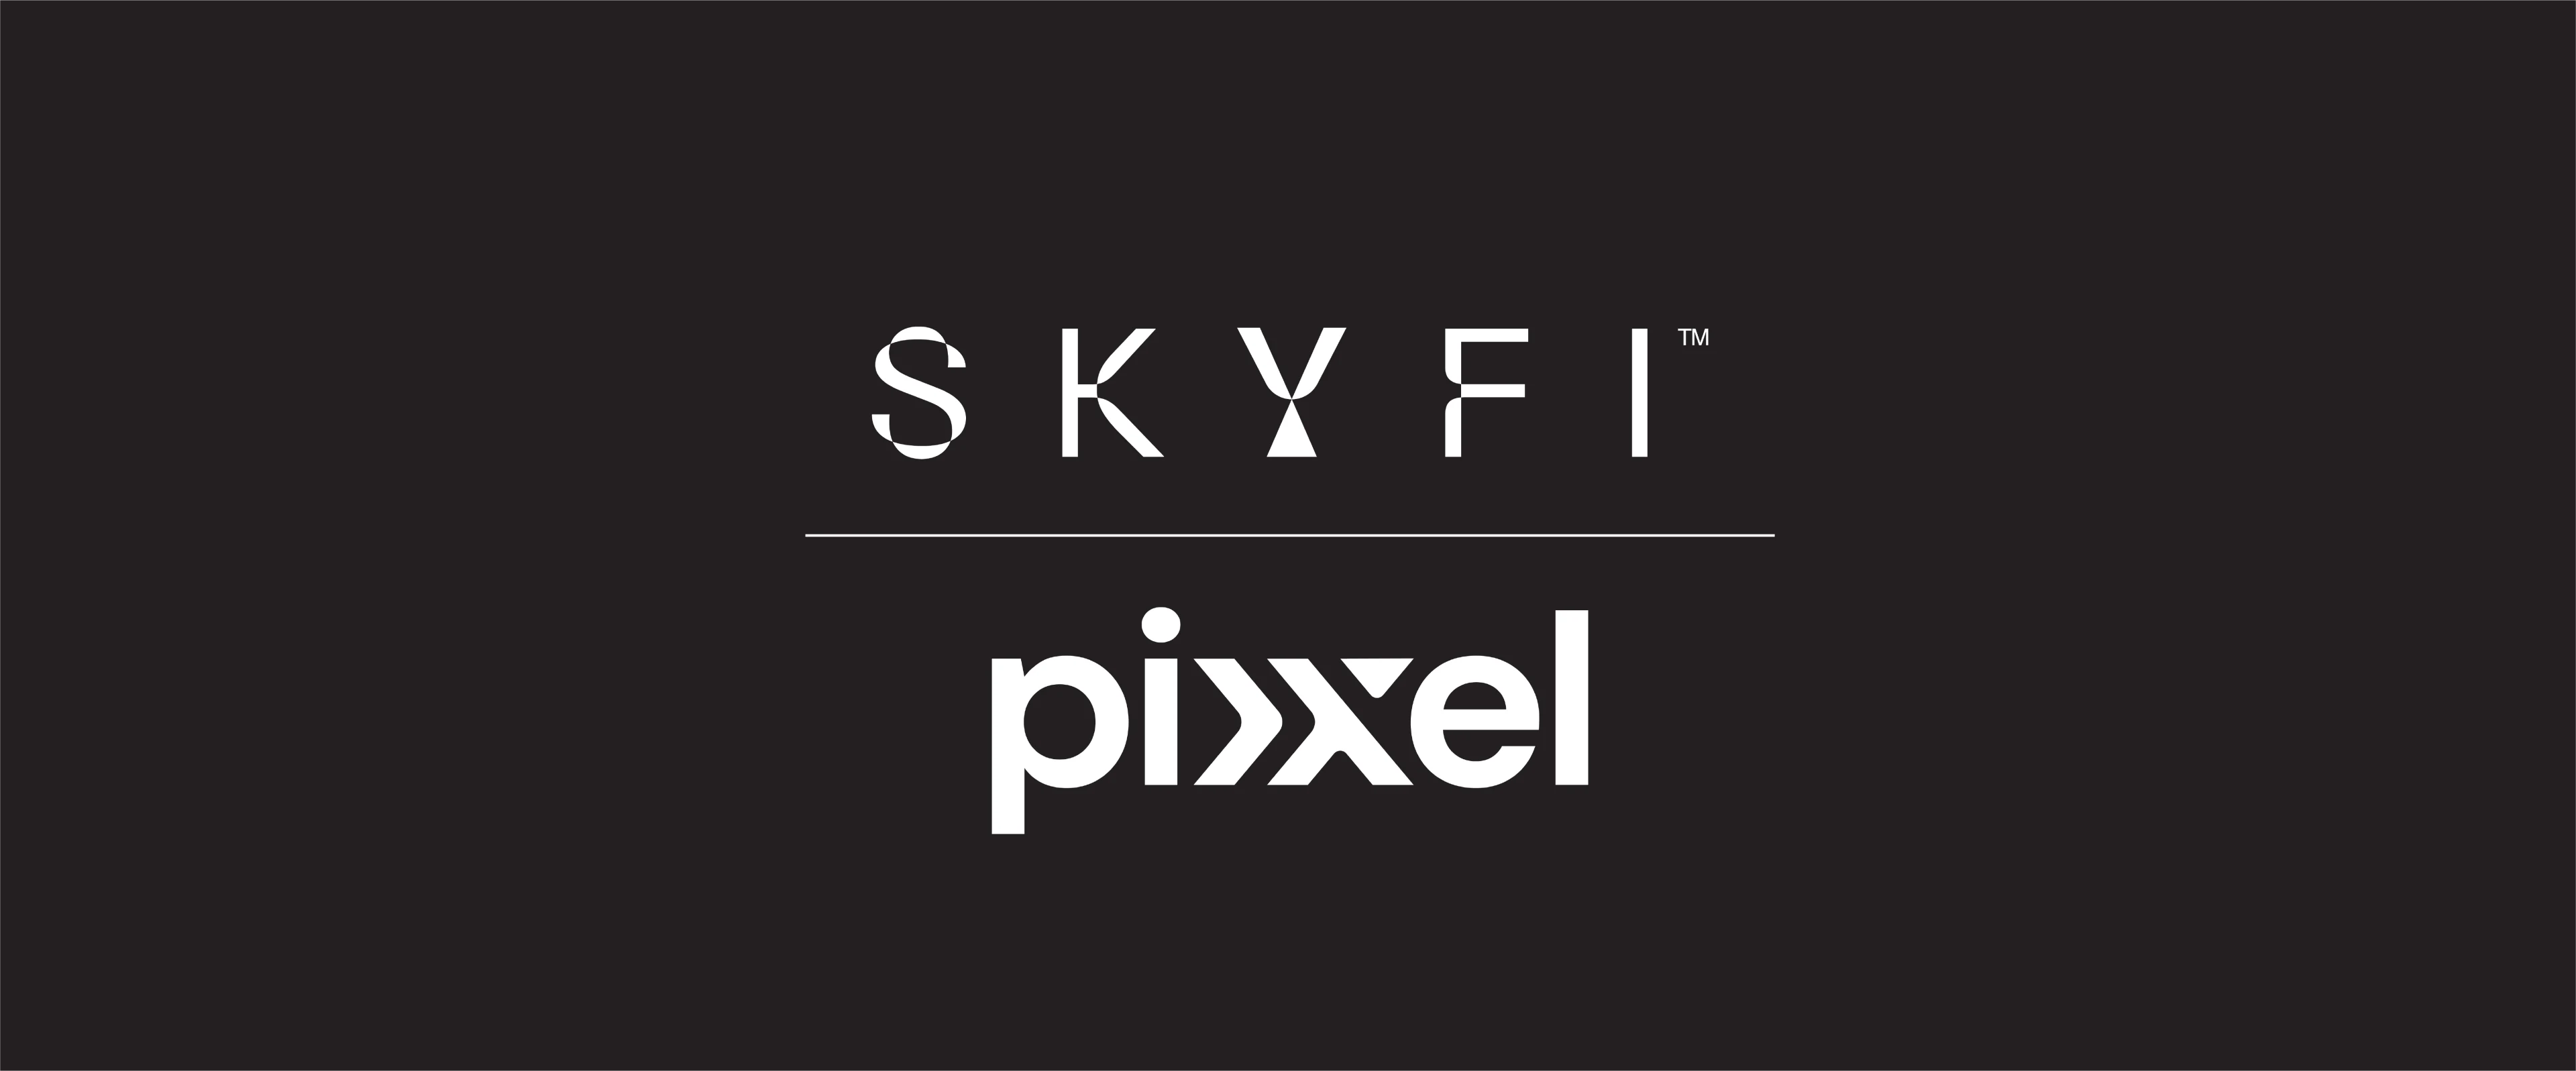 pixxel partnership